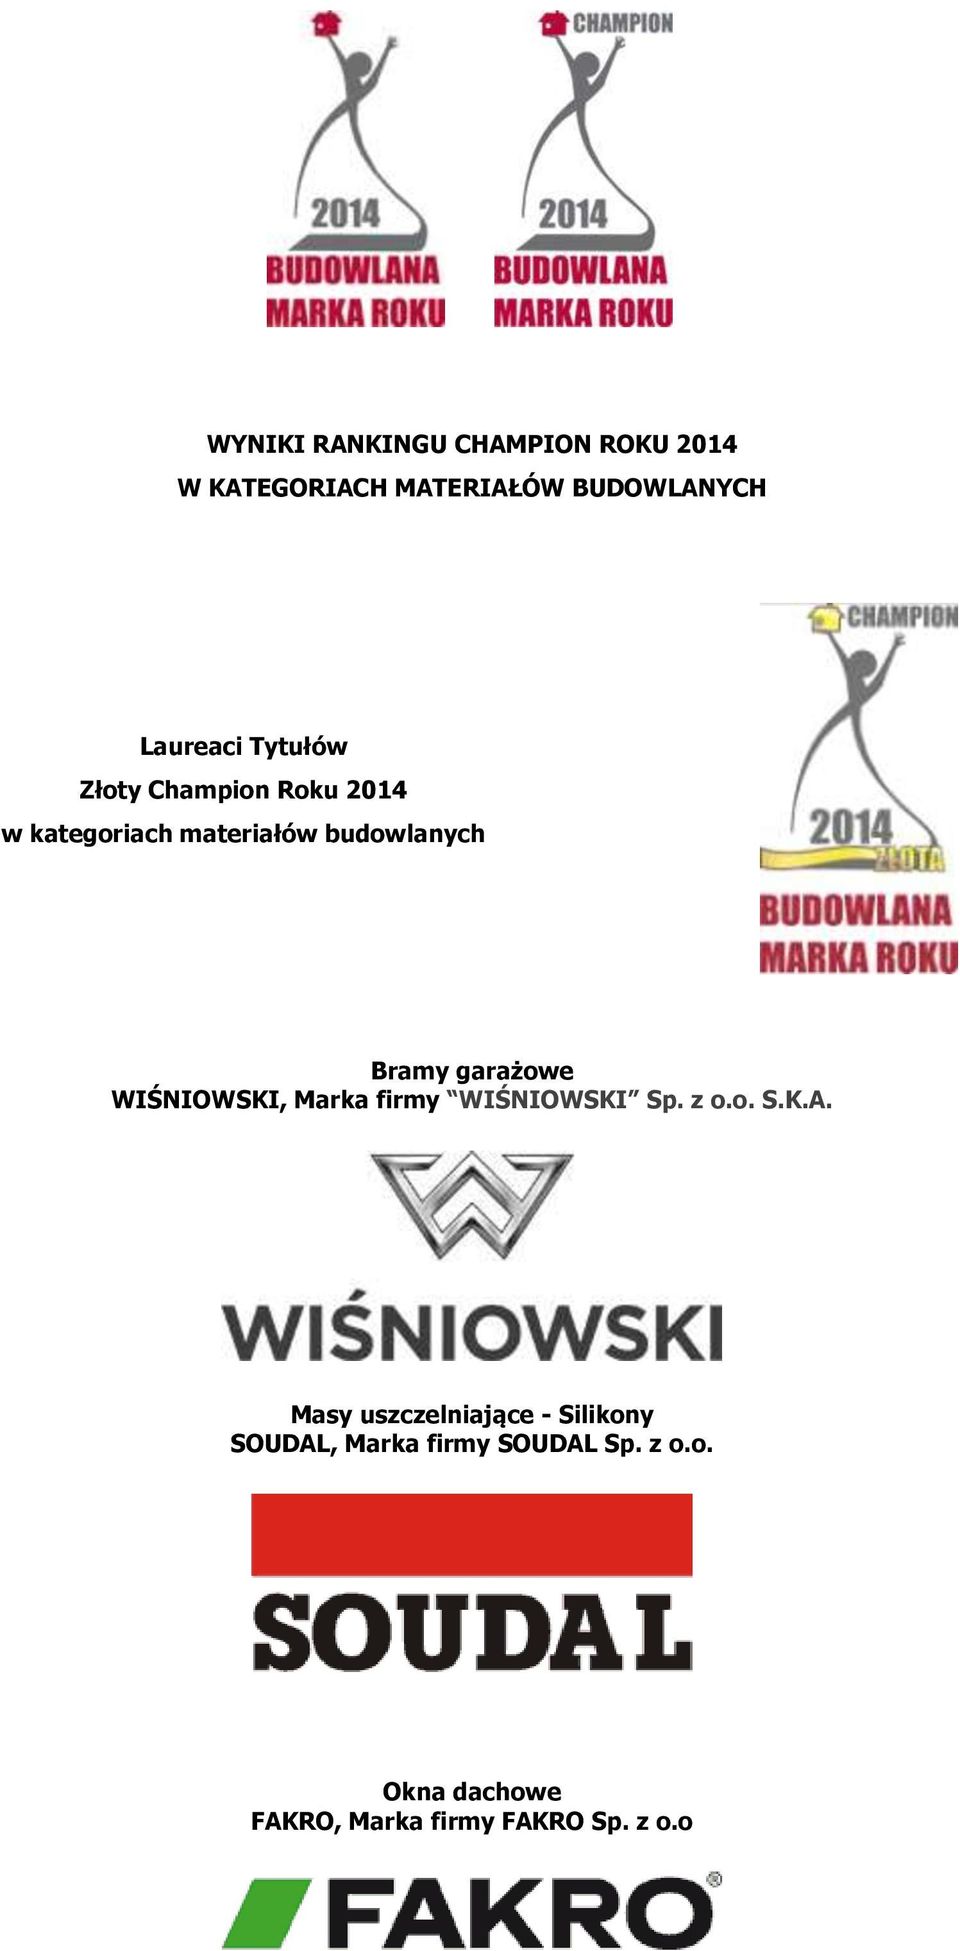 firmy WIŚNIOWSKI Sp. z o.o. S.K.A.